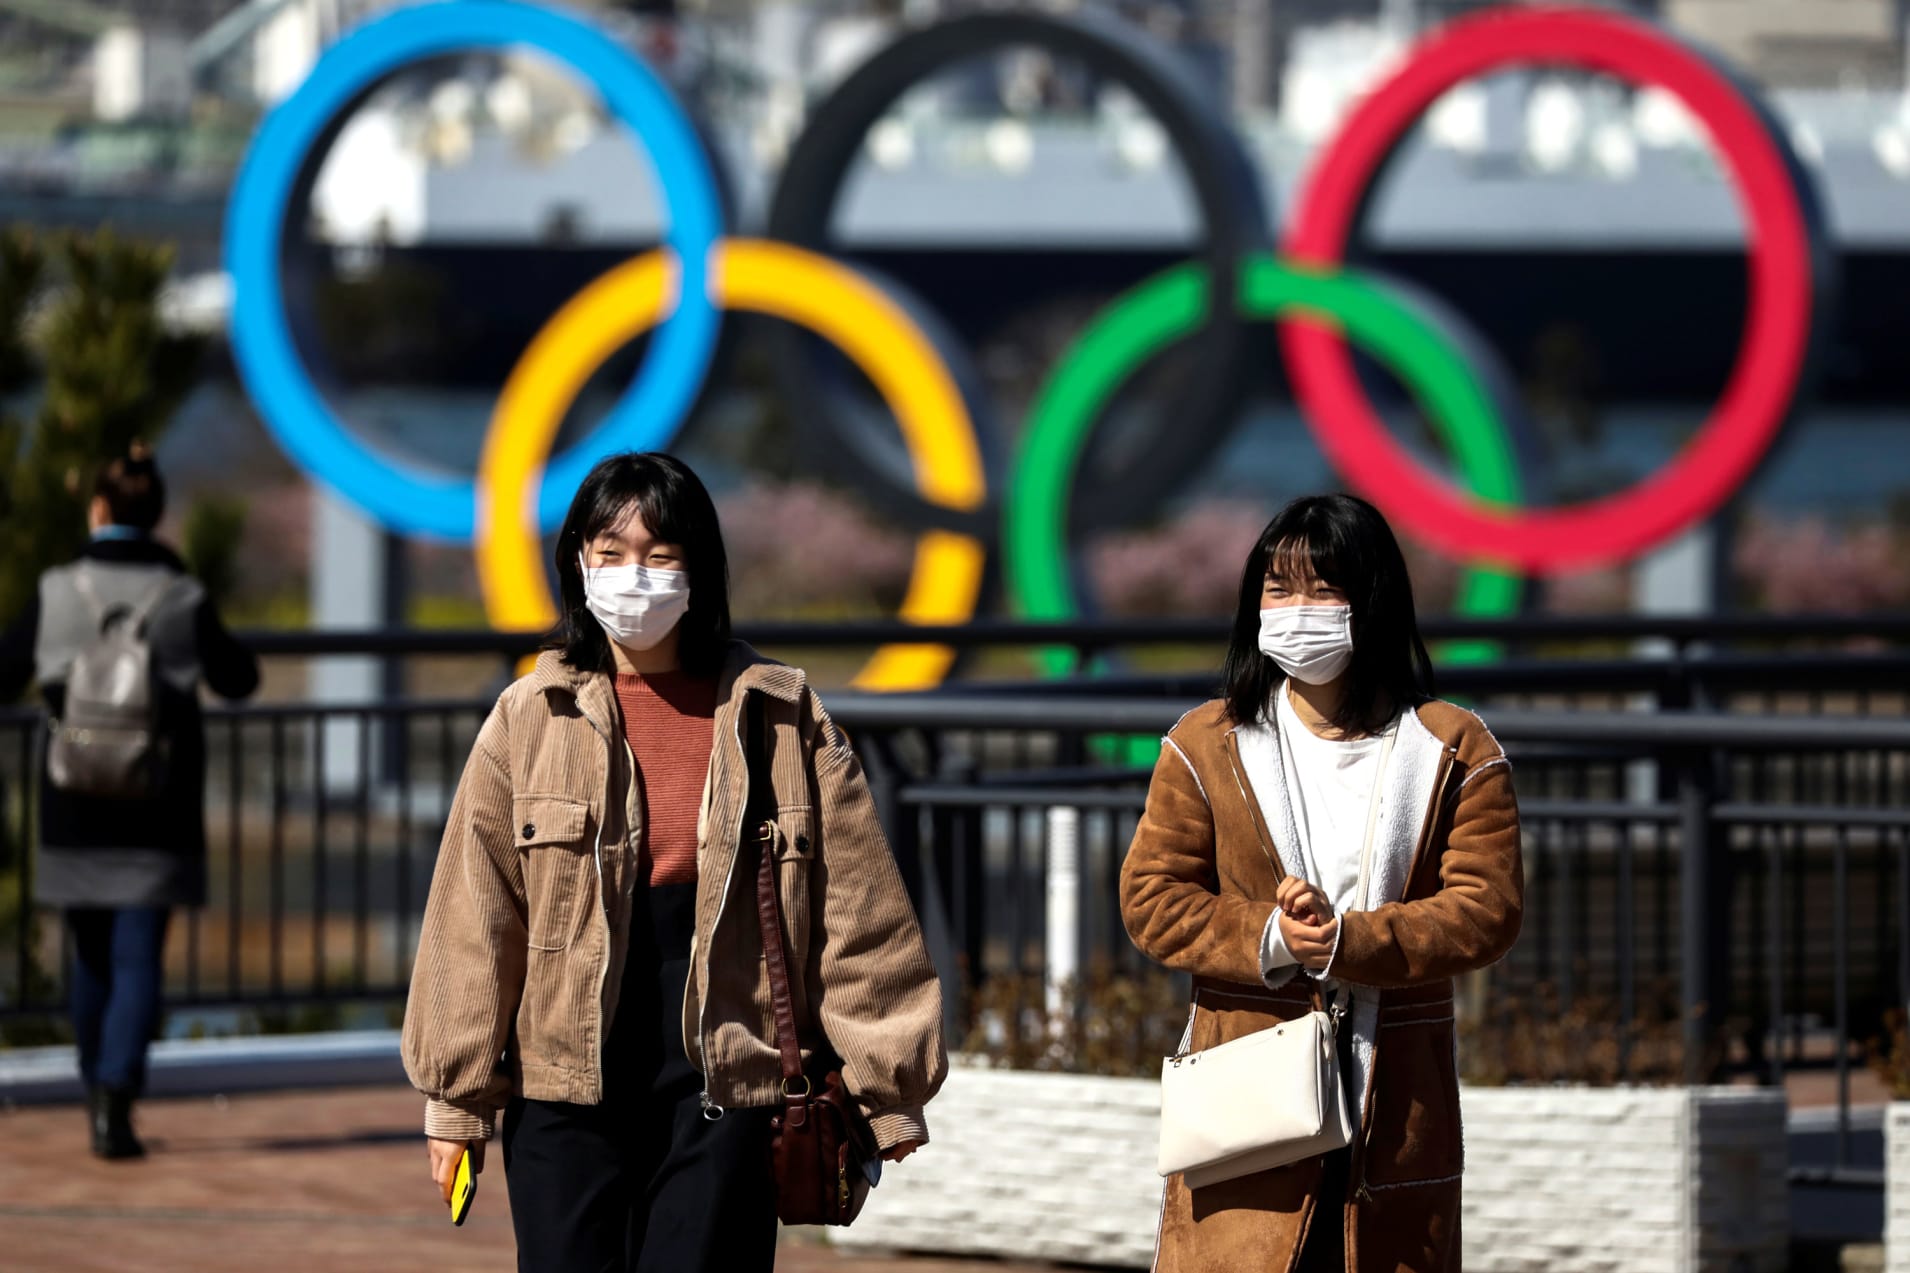 Tokyo 2020 Head Mutō Says Games to be Held “With Coronavirus”